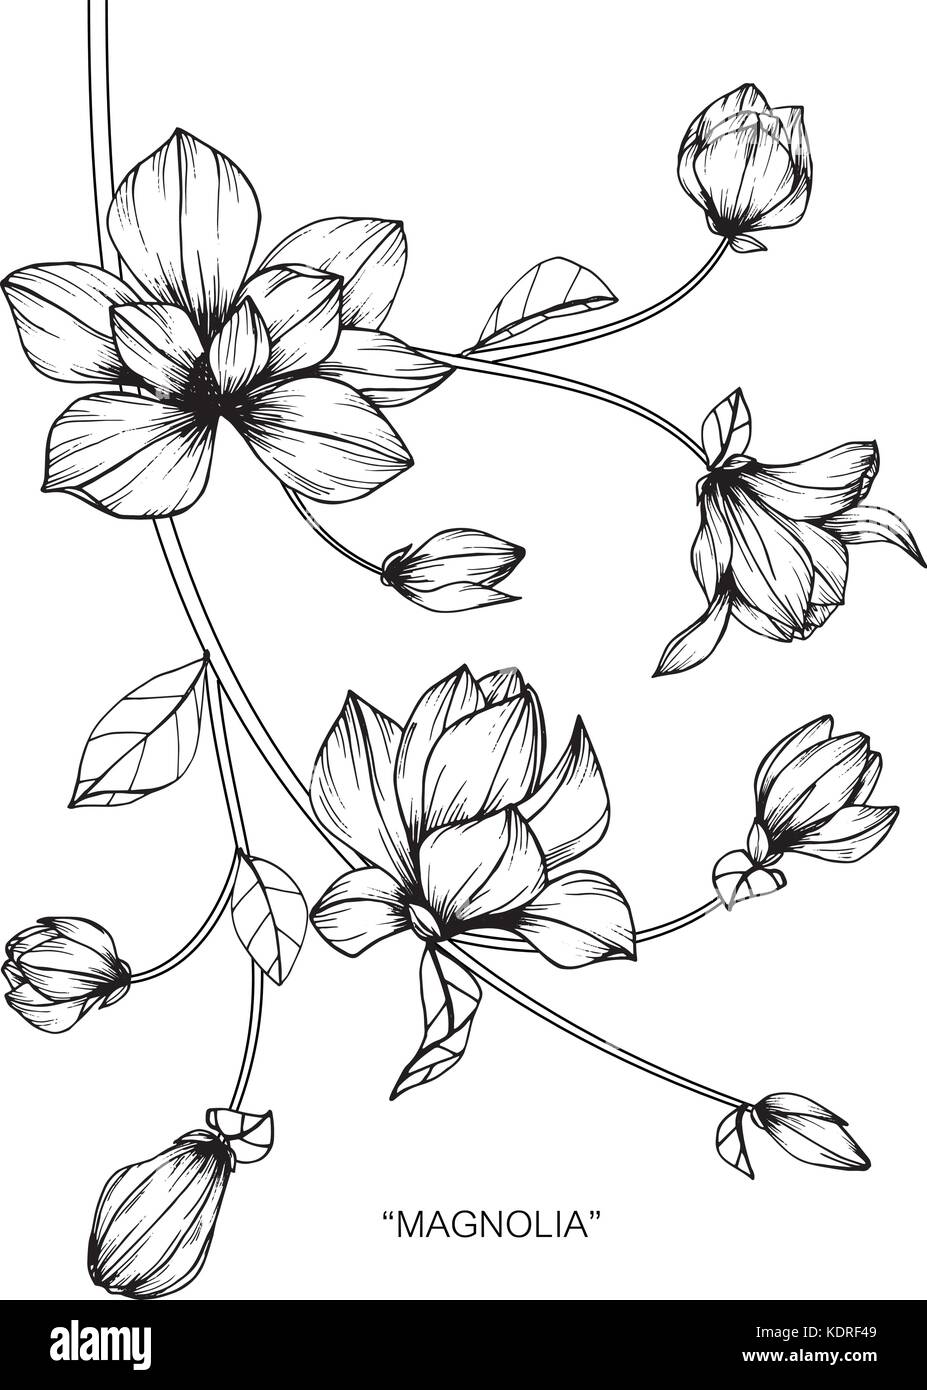 Illustration Dessin Fleur De Magnolia Noir Et Blanc Avec